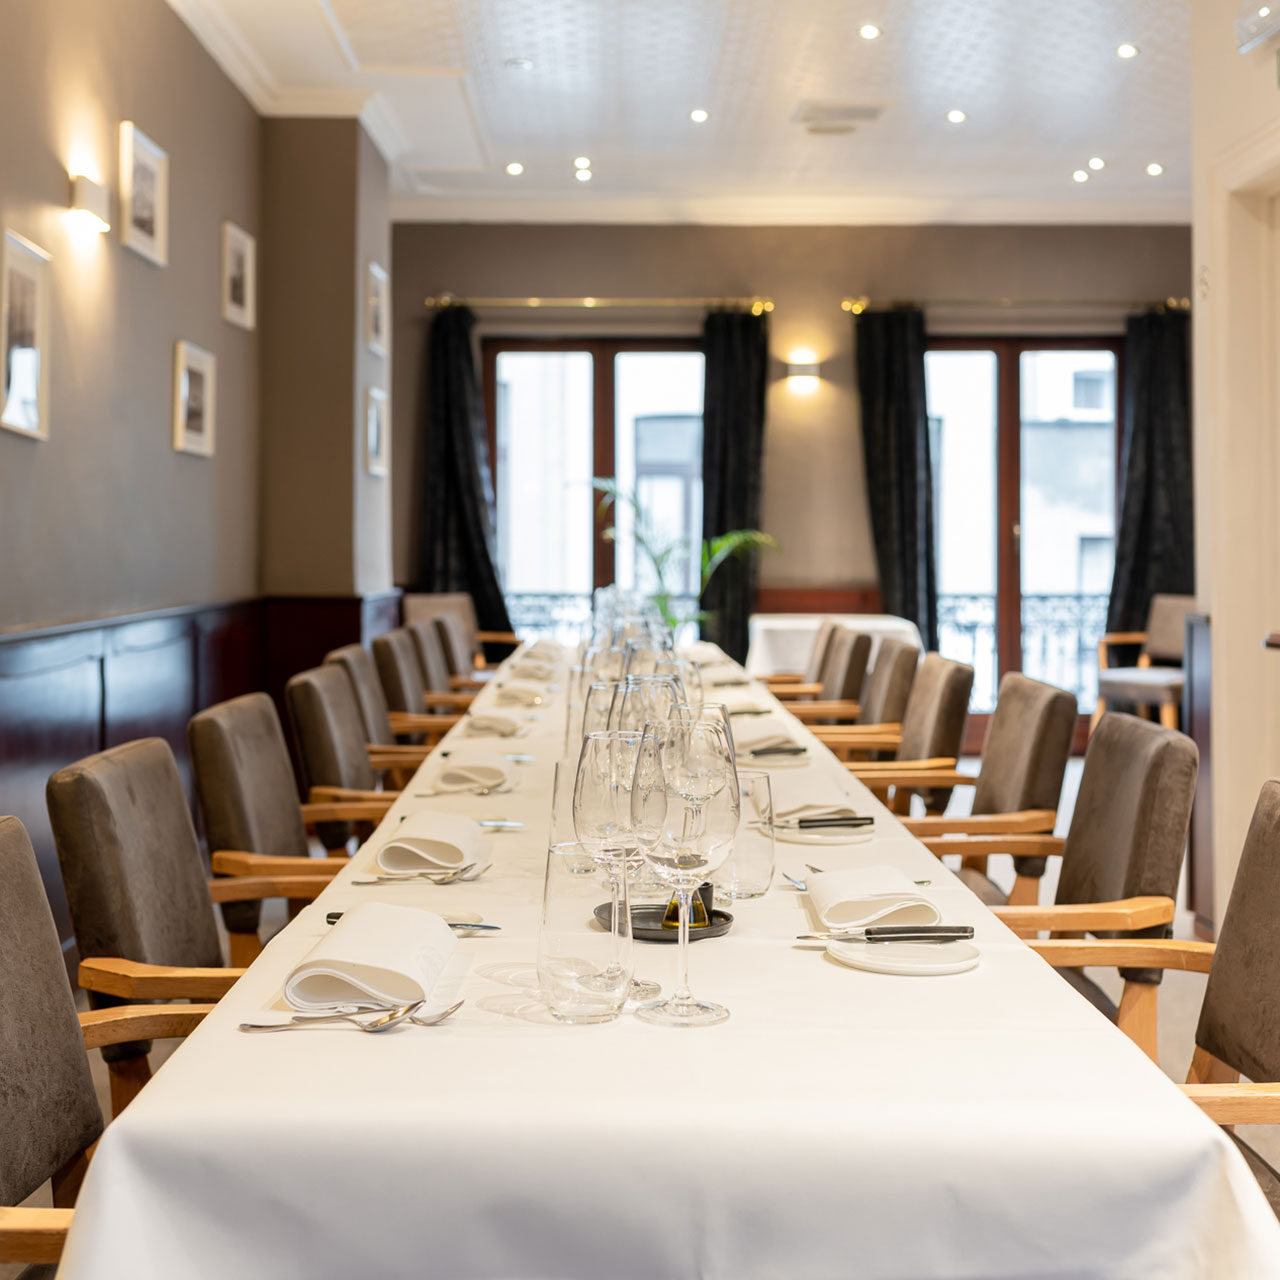 Salon privé - Stirwen - Etterbeek - Brussel - Gastronomische keuken - privé-eetzaal zakelijke maaltijden privé-evenementen